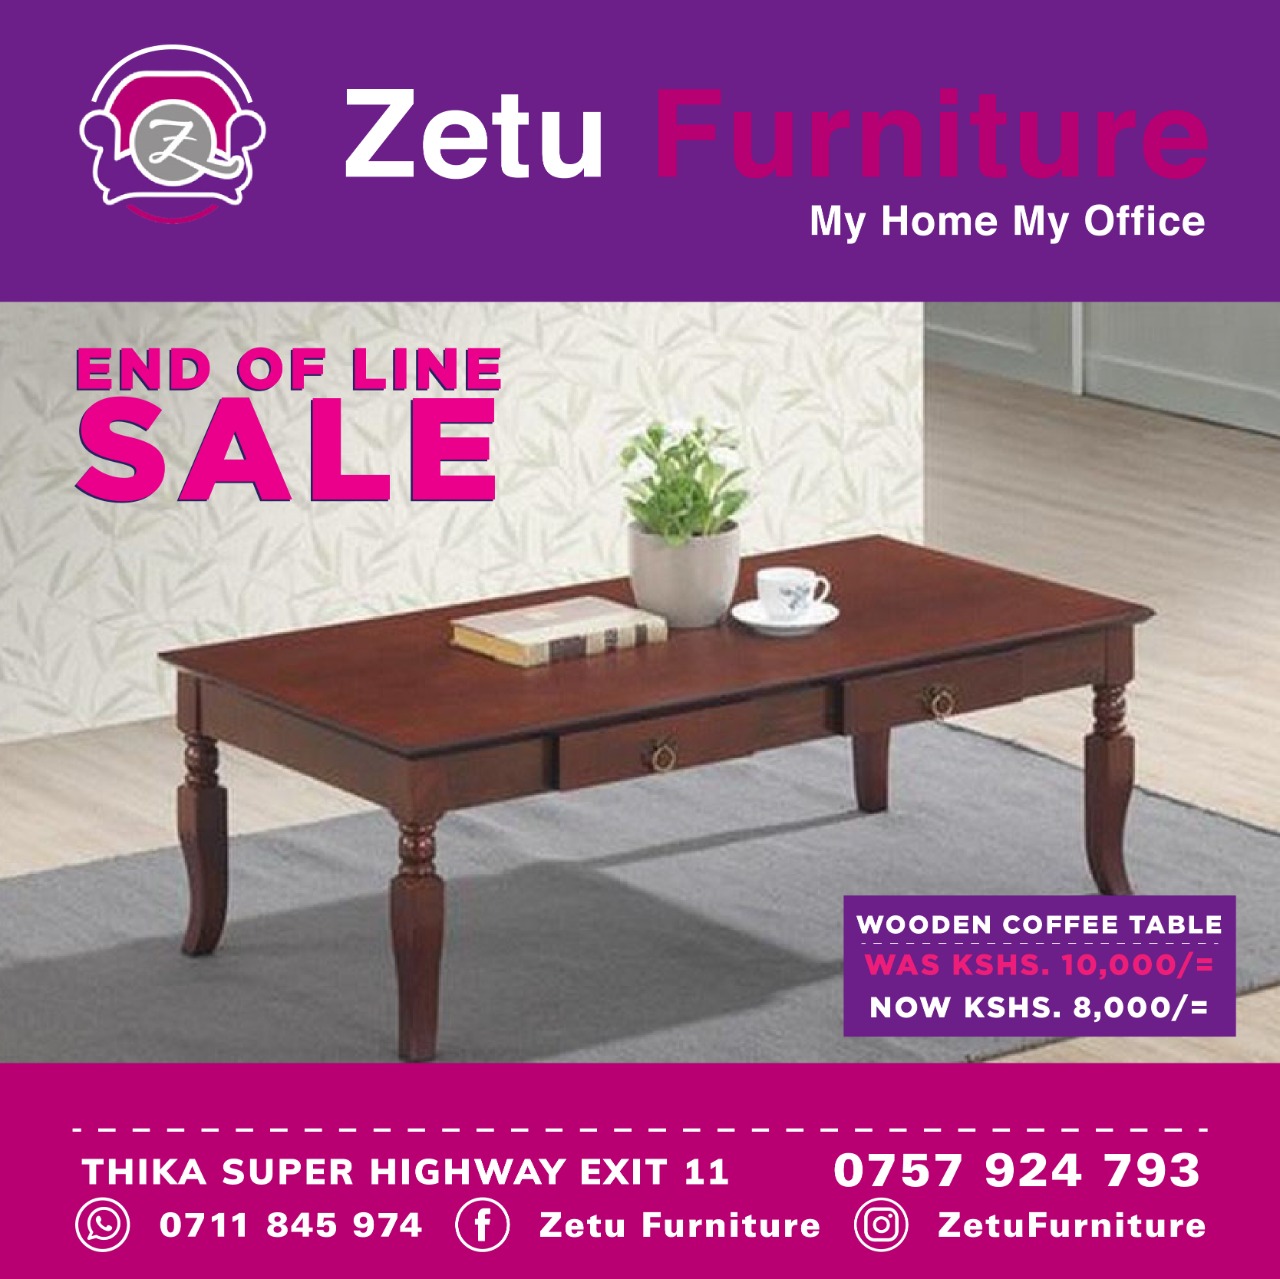 Zetu Furniture on X: 